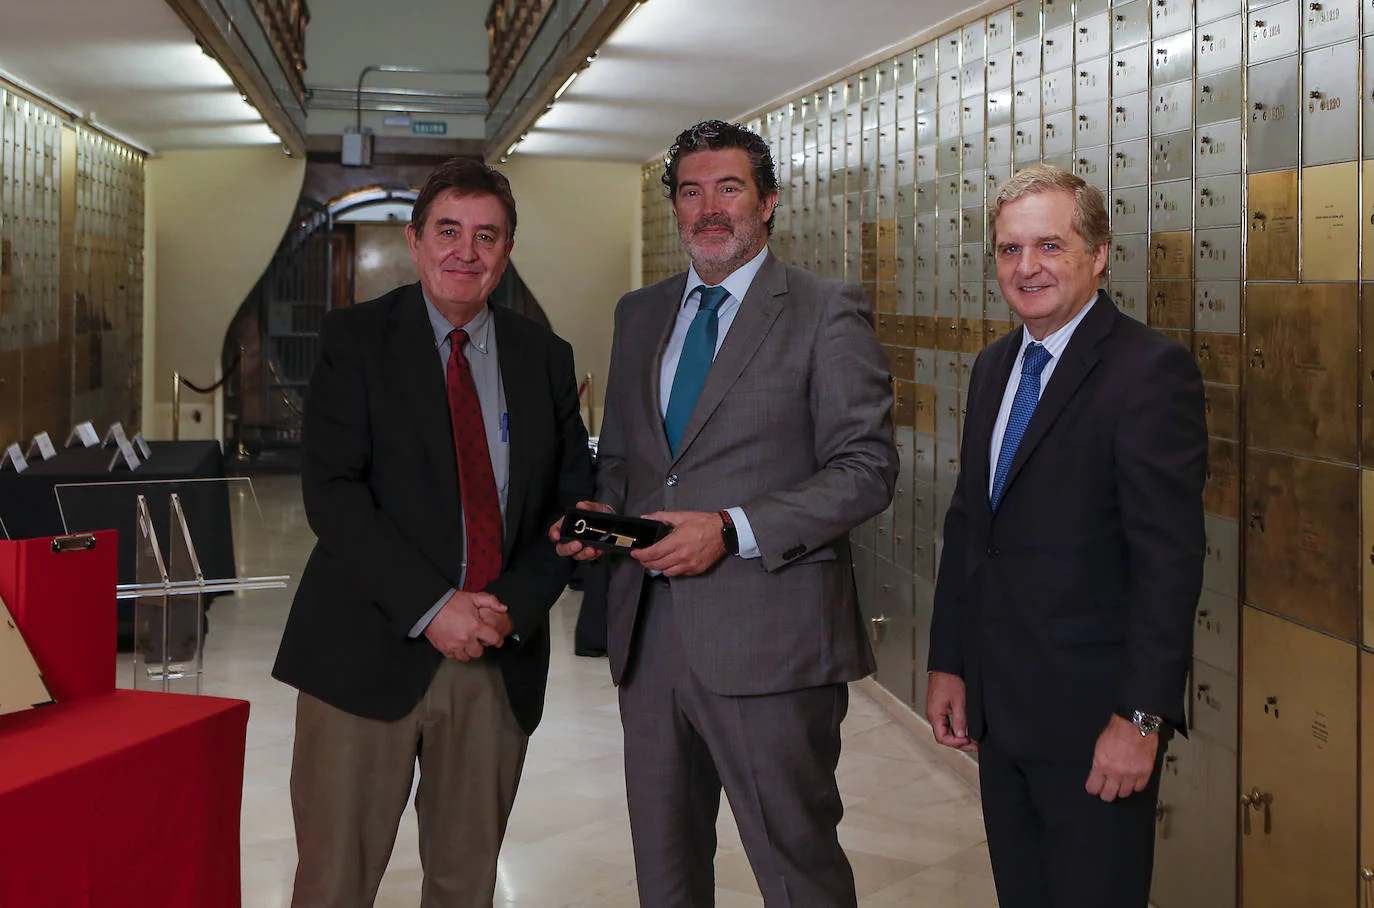 En el centro, Julián Quirós, director de ABC, entre Luis García Montero, director del Instituto Cervantes e Ignacio Ybarra, presidente de Vocento.